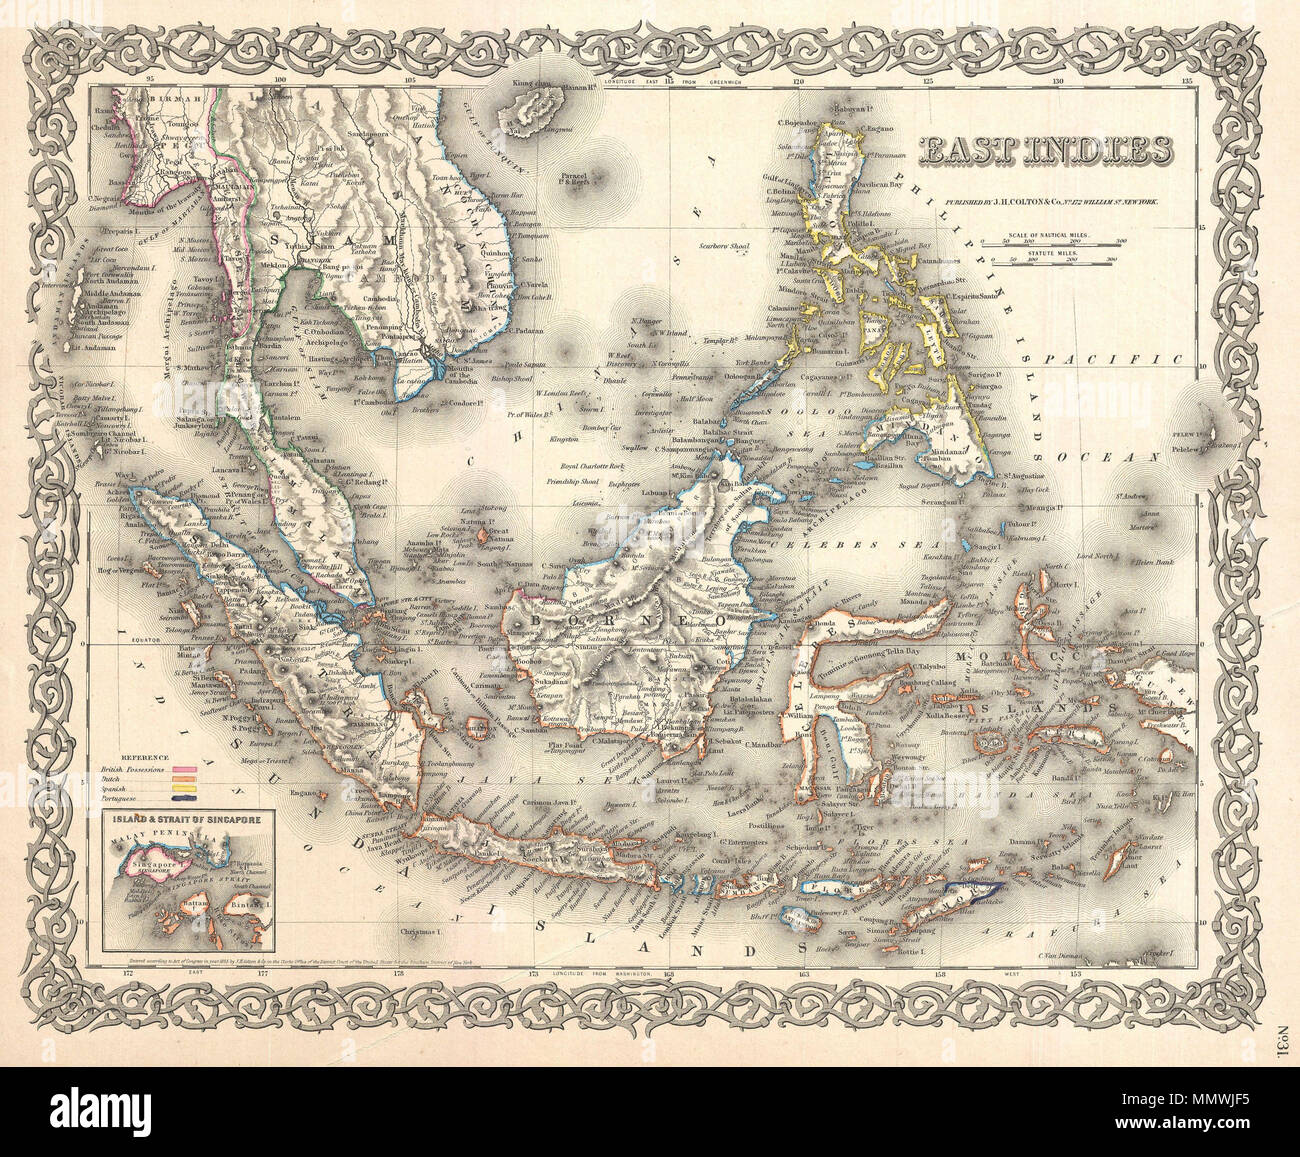 . Inglese: un bel 1855 prima edizione esempio di Colton la mappa delle Indie Orientali. Coperchi dalla Birmania nell'estremo nord-ovest in Nuova Guinea e Timor Est nel sud-est. Include della Birmania, Pegu, Siam (Thailandia), Cambogia, Chochin (Vietnam del Sud), malese (Malesia), BORNEO, FILIPPINE, Java Sumatra e Singapore. Questa mappa è significativa in quanto è tra i primi American mappe al dettaglio l'isola e la città di Singapore - che appare in basso a destra. Quando questa mappa è stata fatta, Singapore, disciplinata dalla British East India Company, stava sperimentando una massiccia ondata di immigrazione e la crescita a causa t Foto Stock